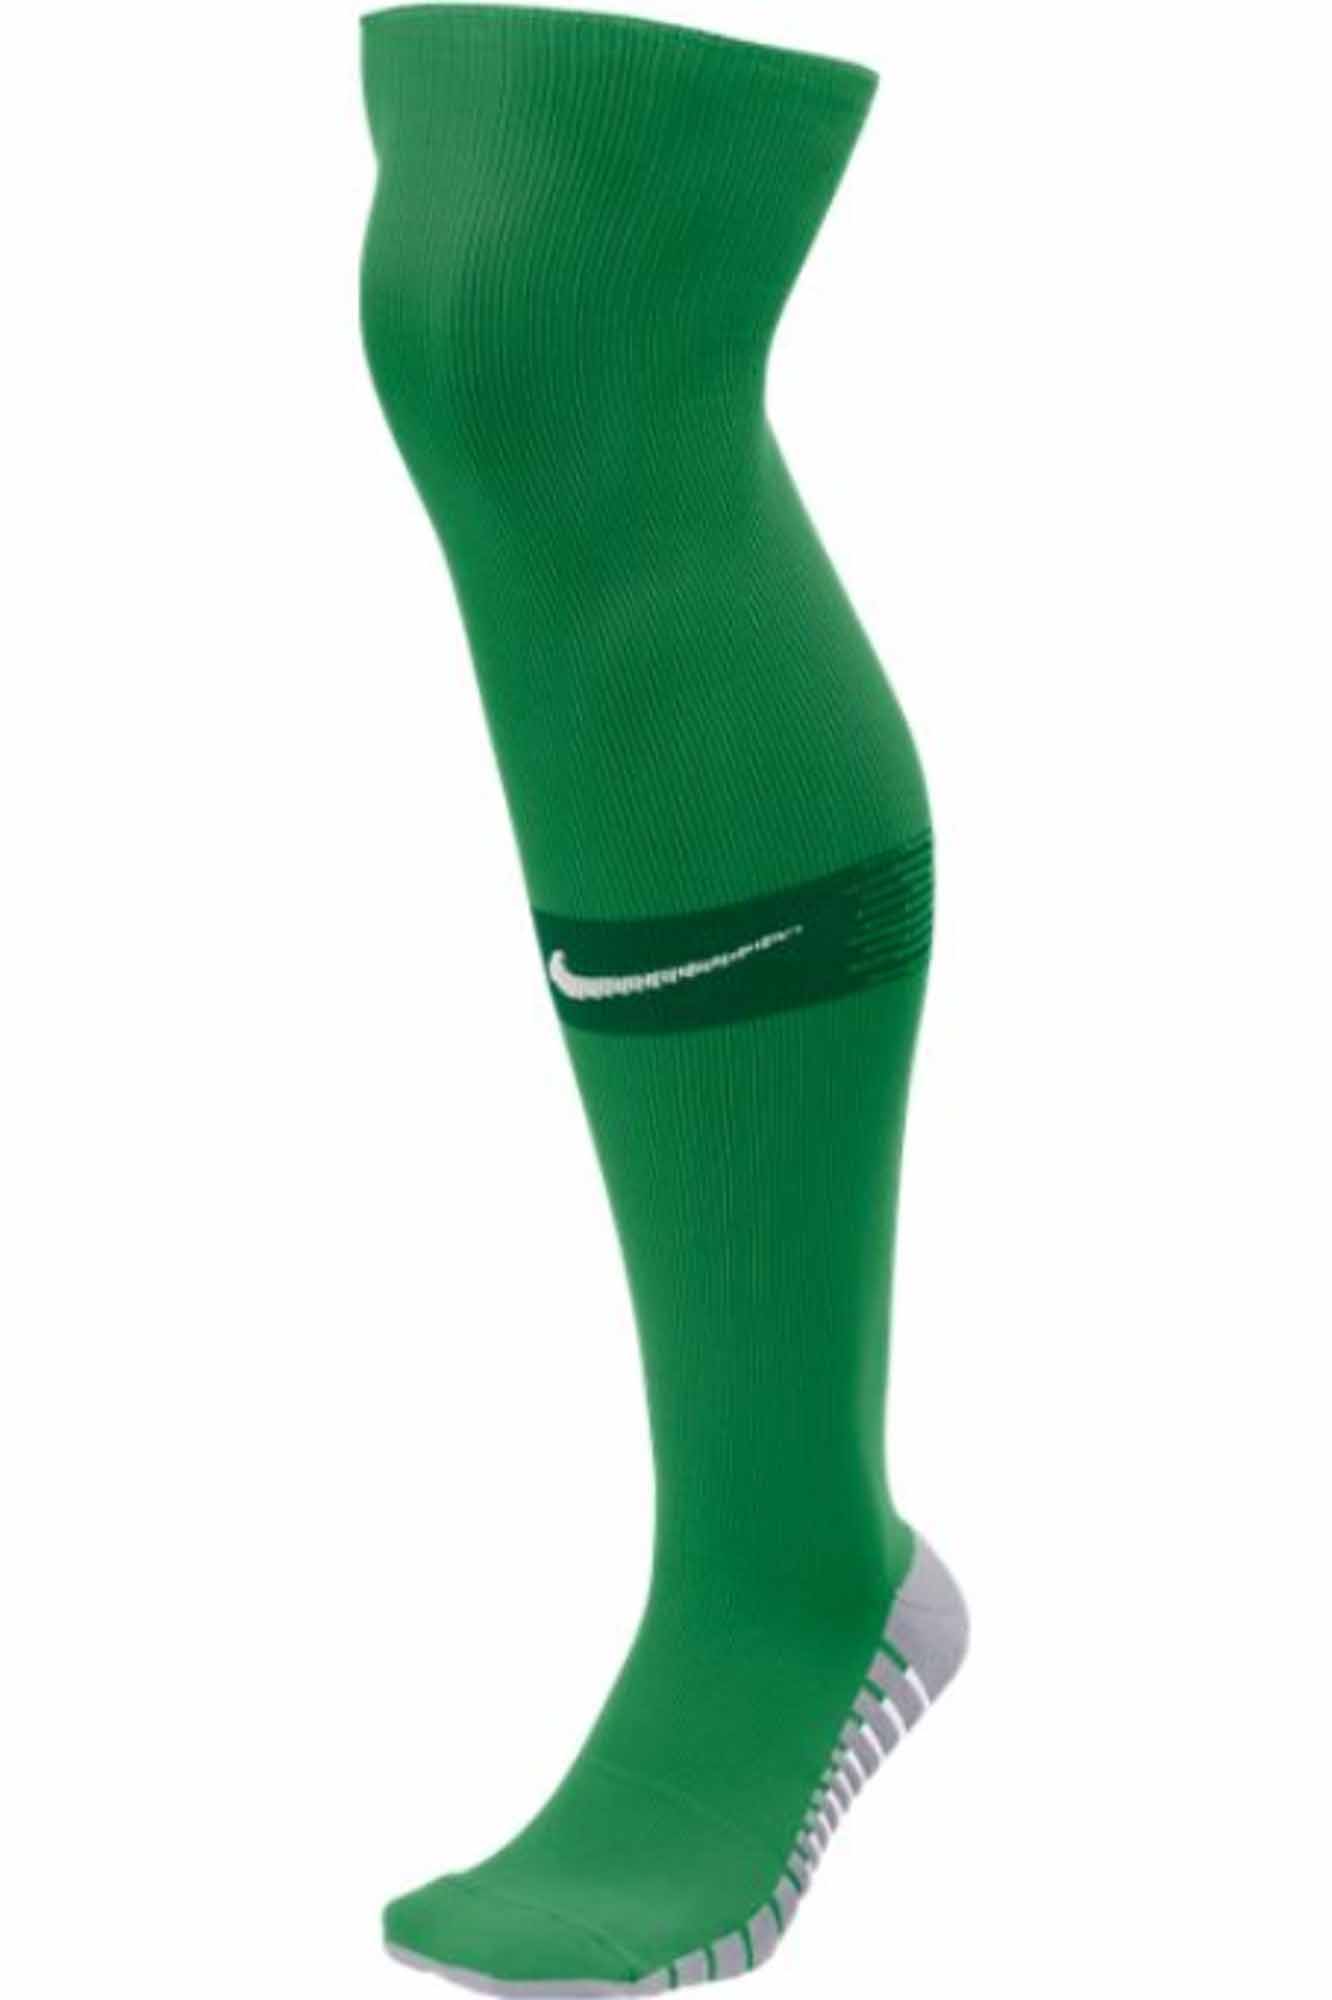 green nike soccer socks